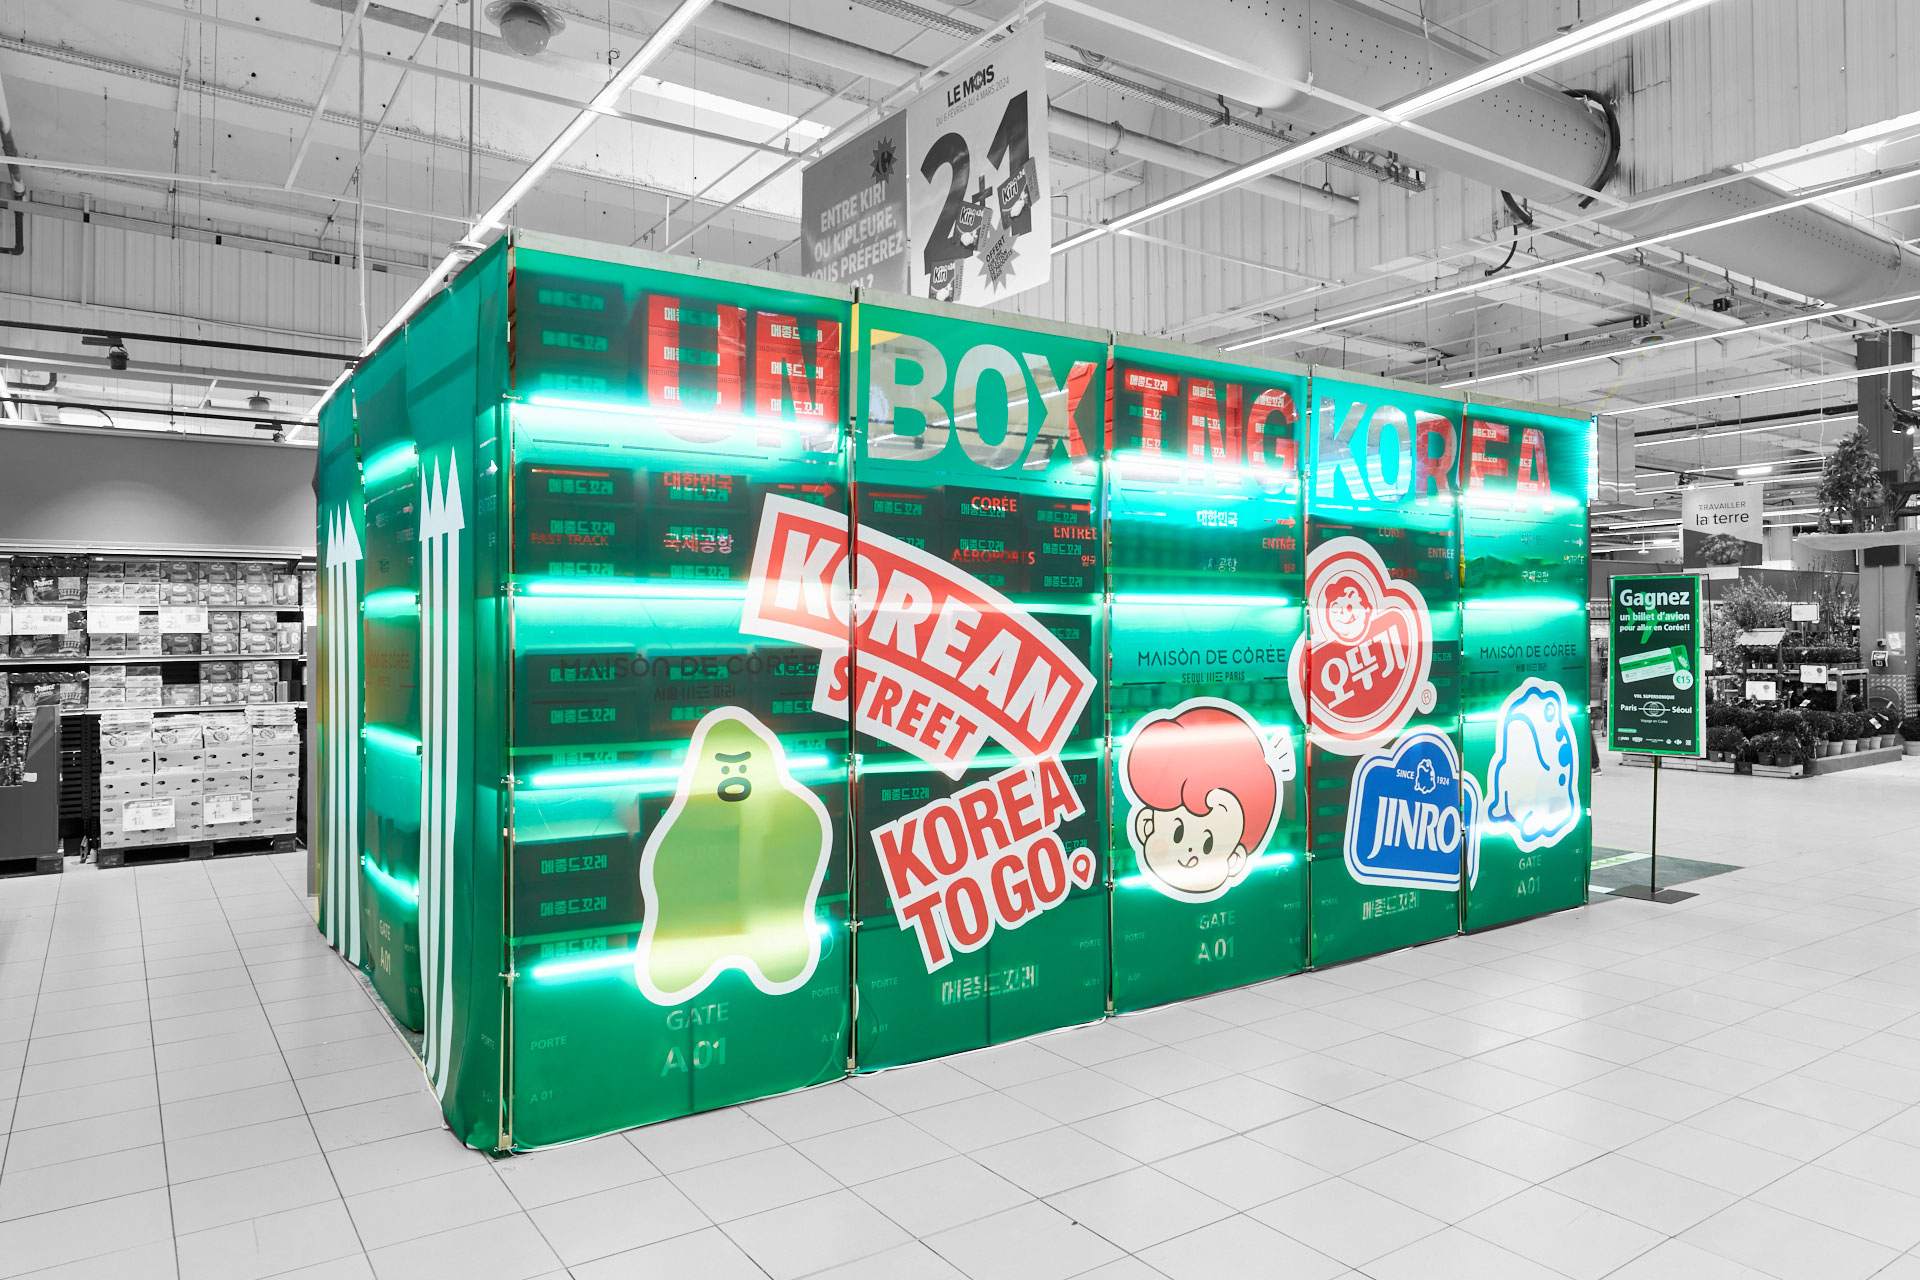 Vue de la façade extérieur du pop up store UNBOXING KOREA implanté dans à Carrefour